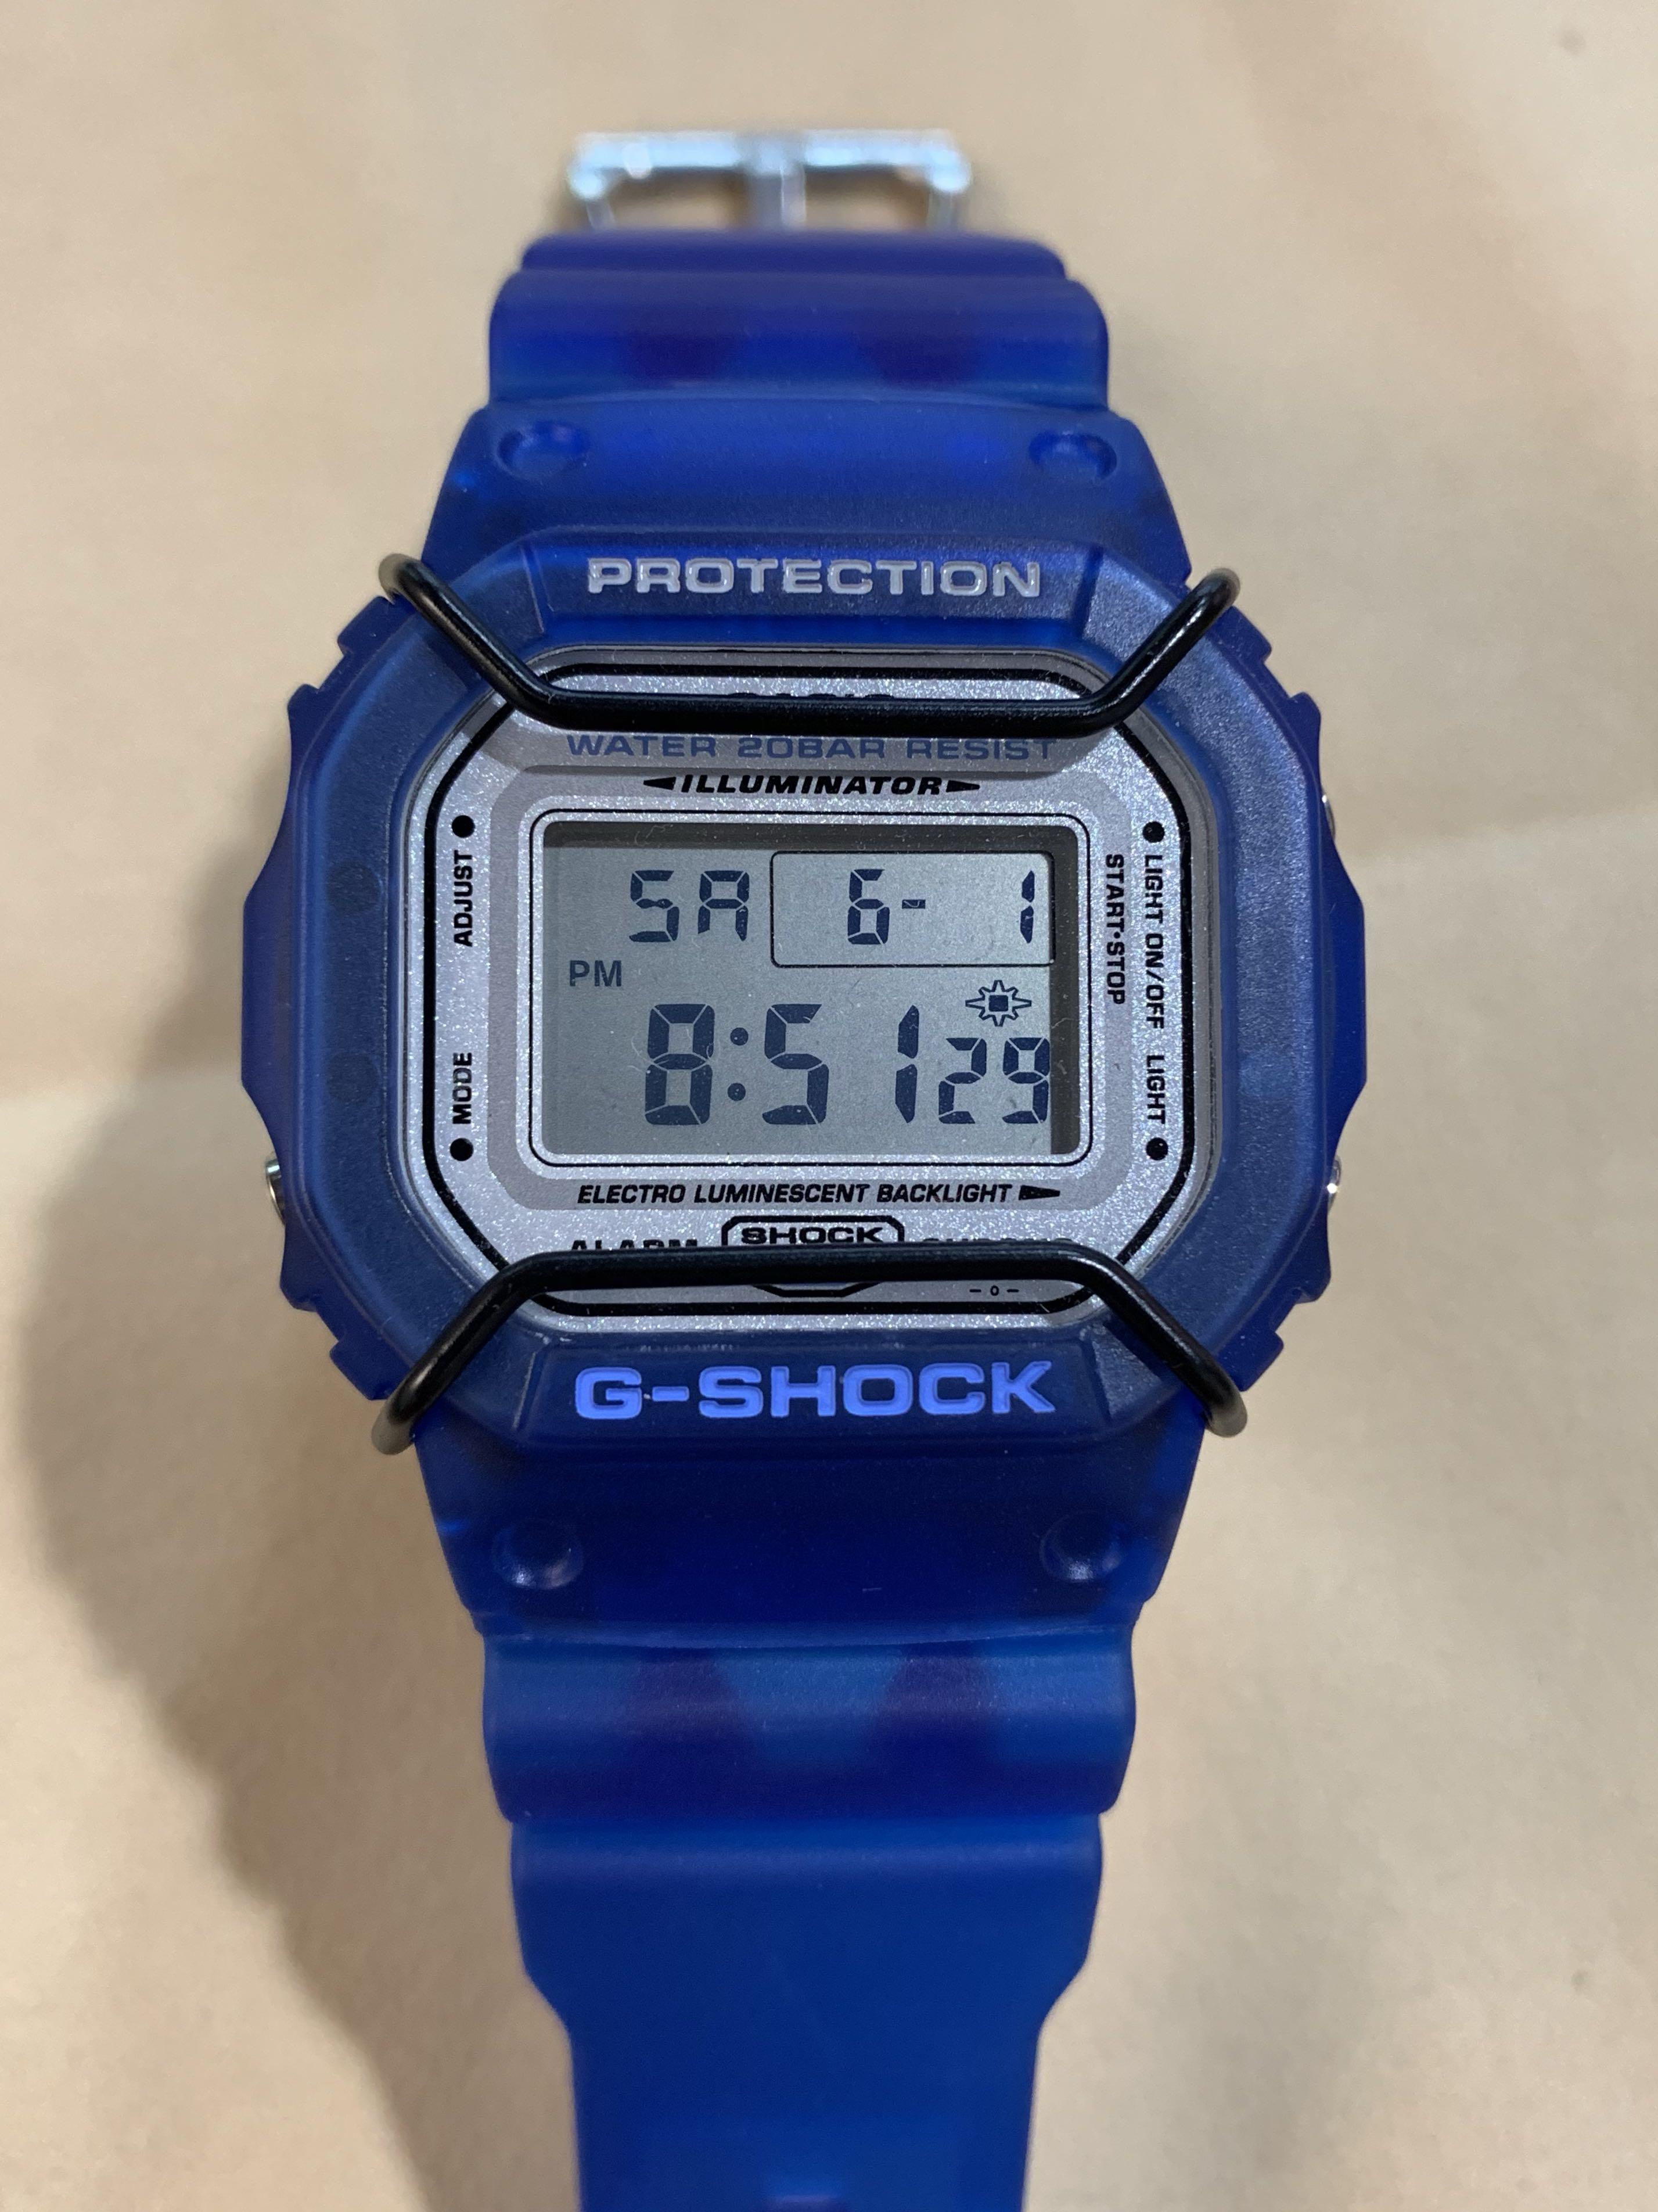 G-SHOCK/スピード/DW-5600/波乗人/メタリック/限定/ビンテージ - 時計